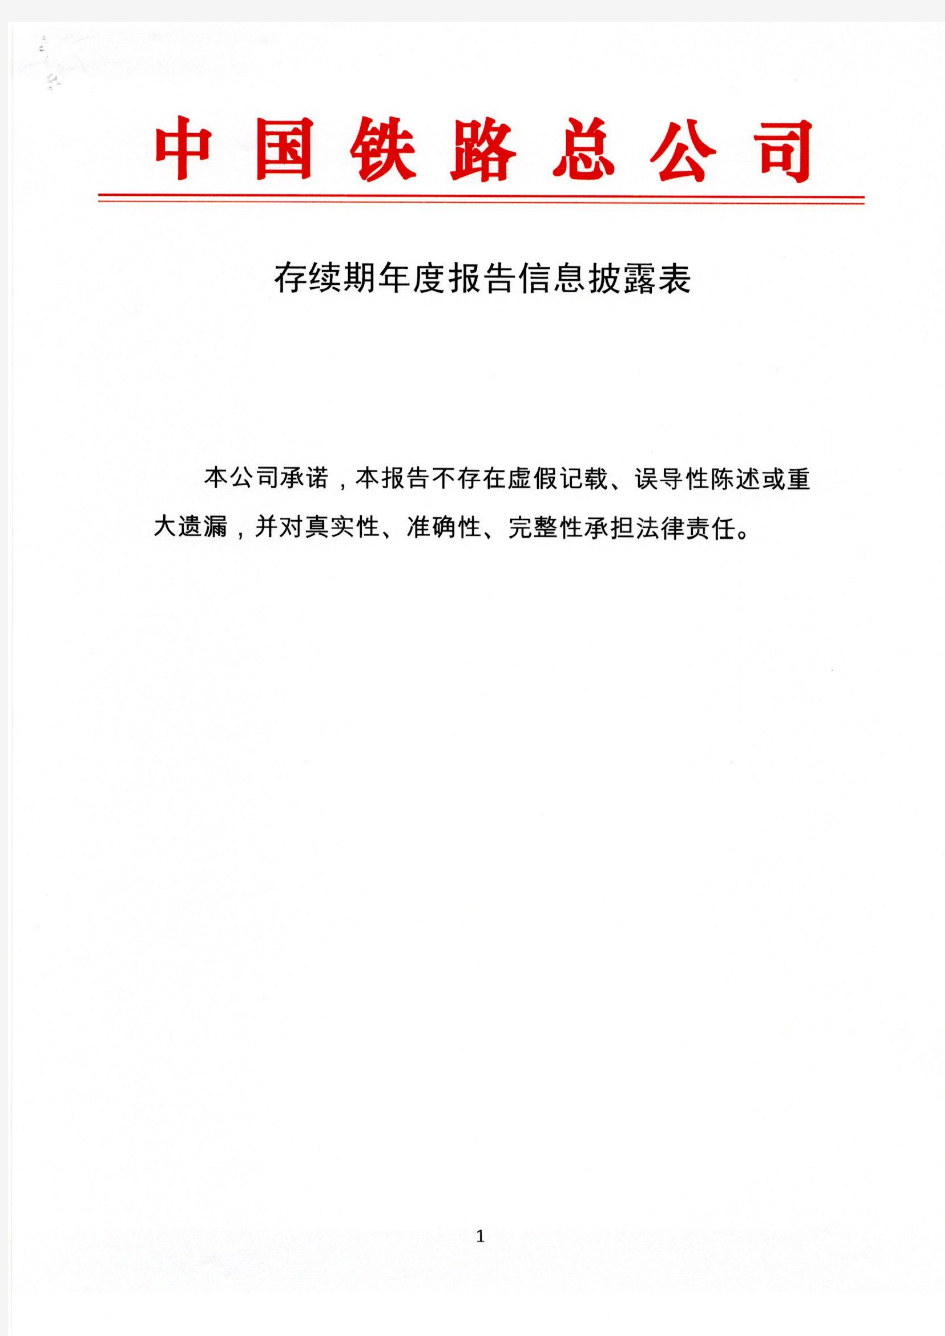 中国铁路总公司2015年年度报告